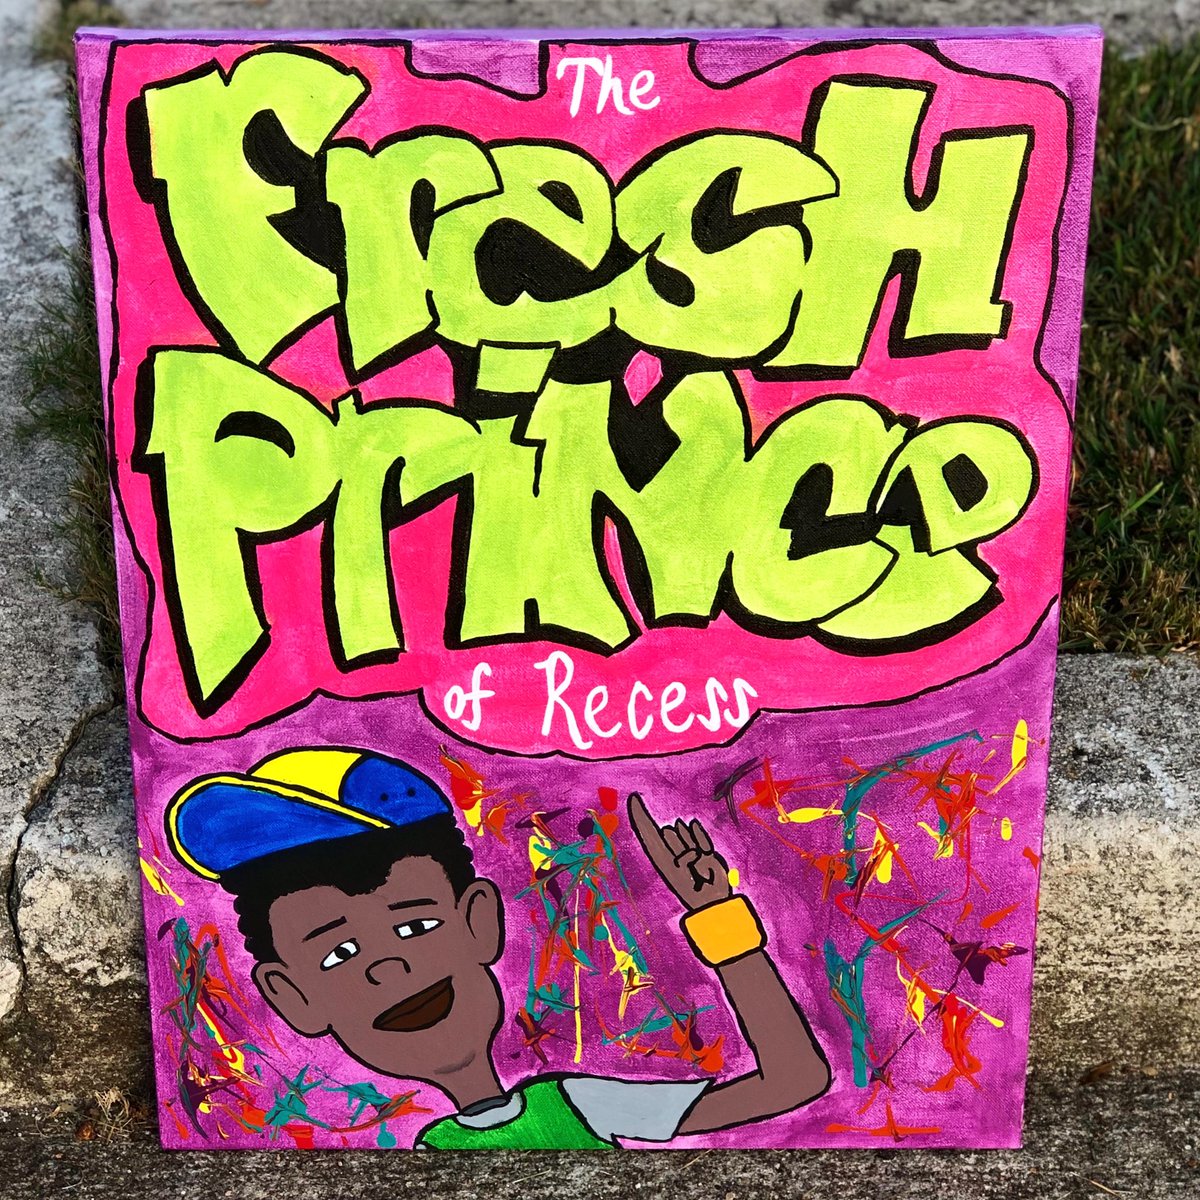 “Fresh Prince of Recess”Vince as Fresh Prince